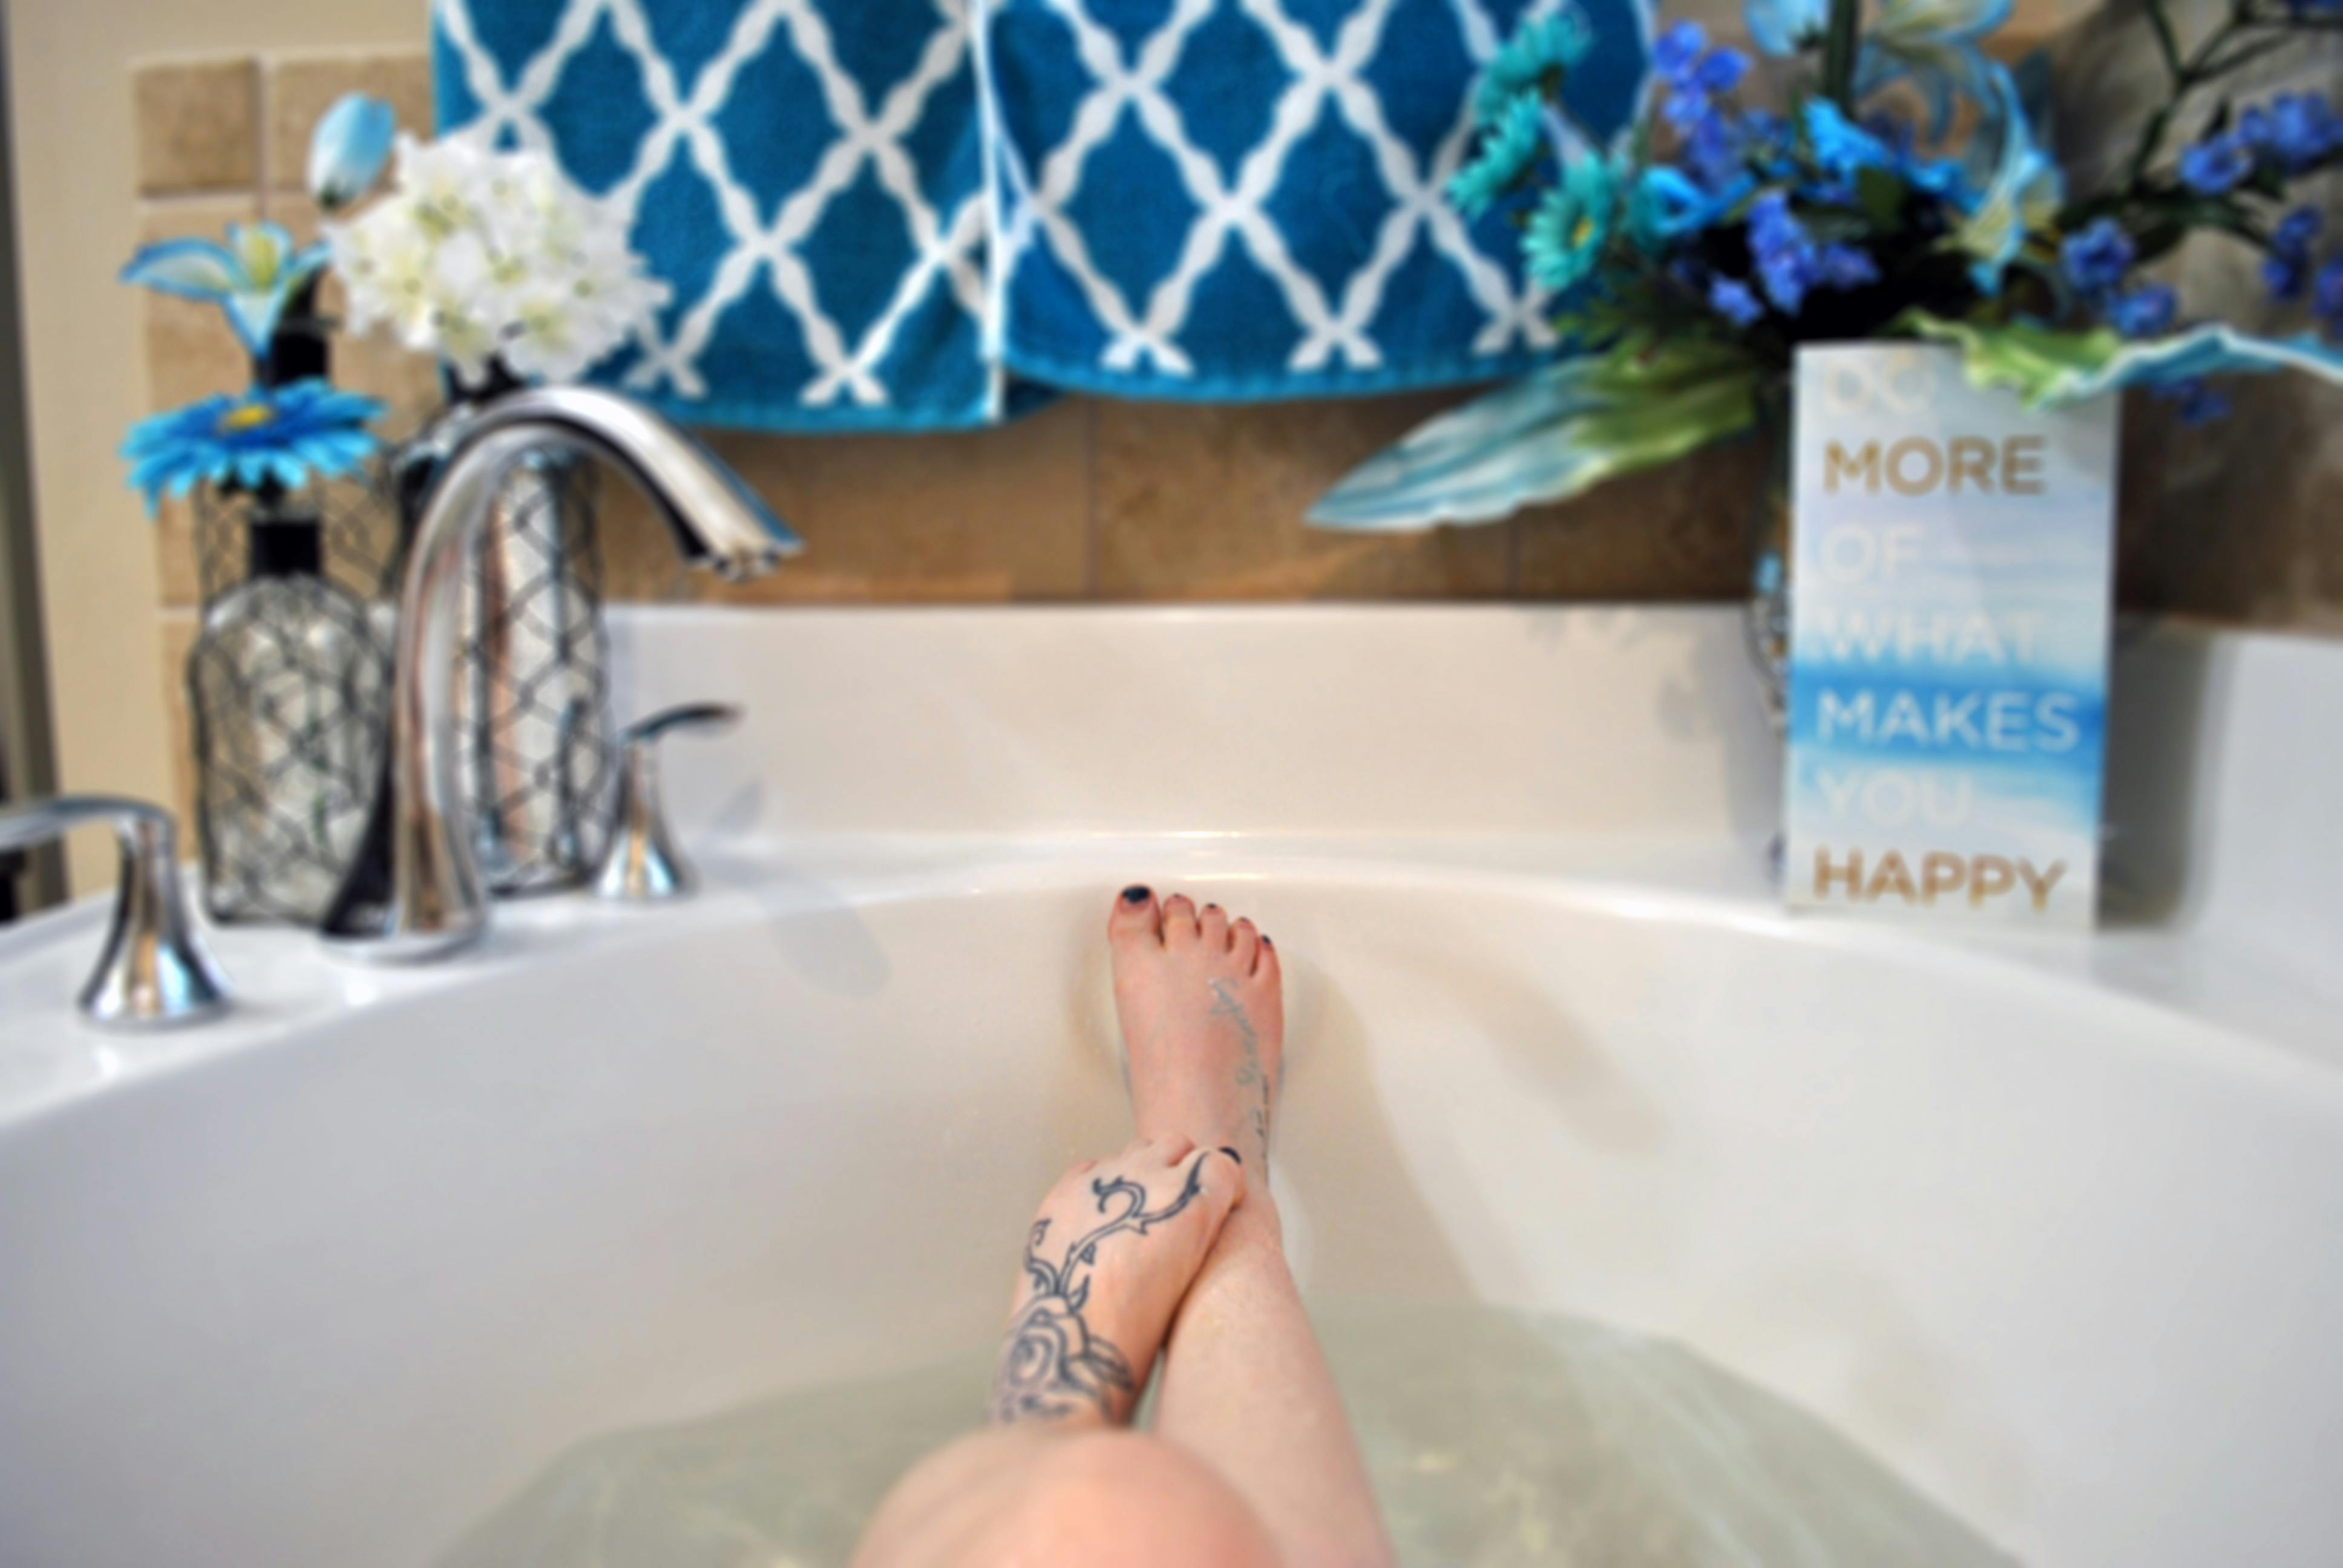 Free stock photo of bath tub, bathtub, blue flower